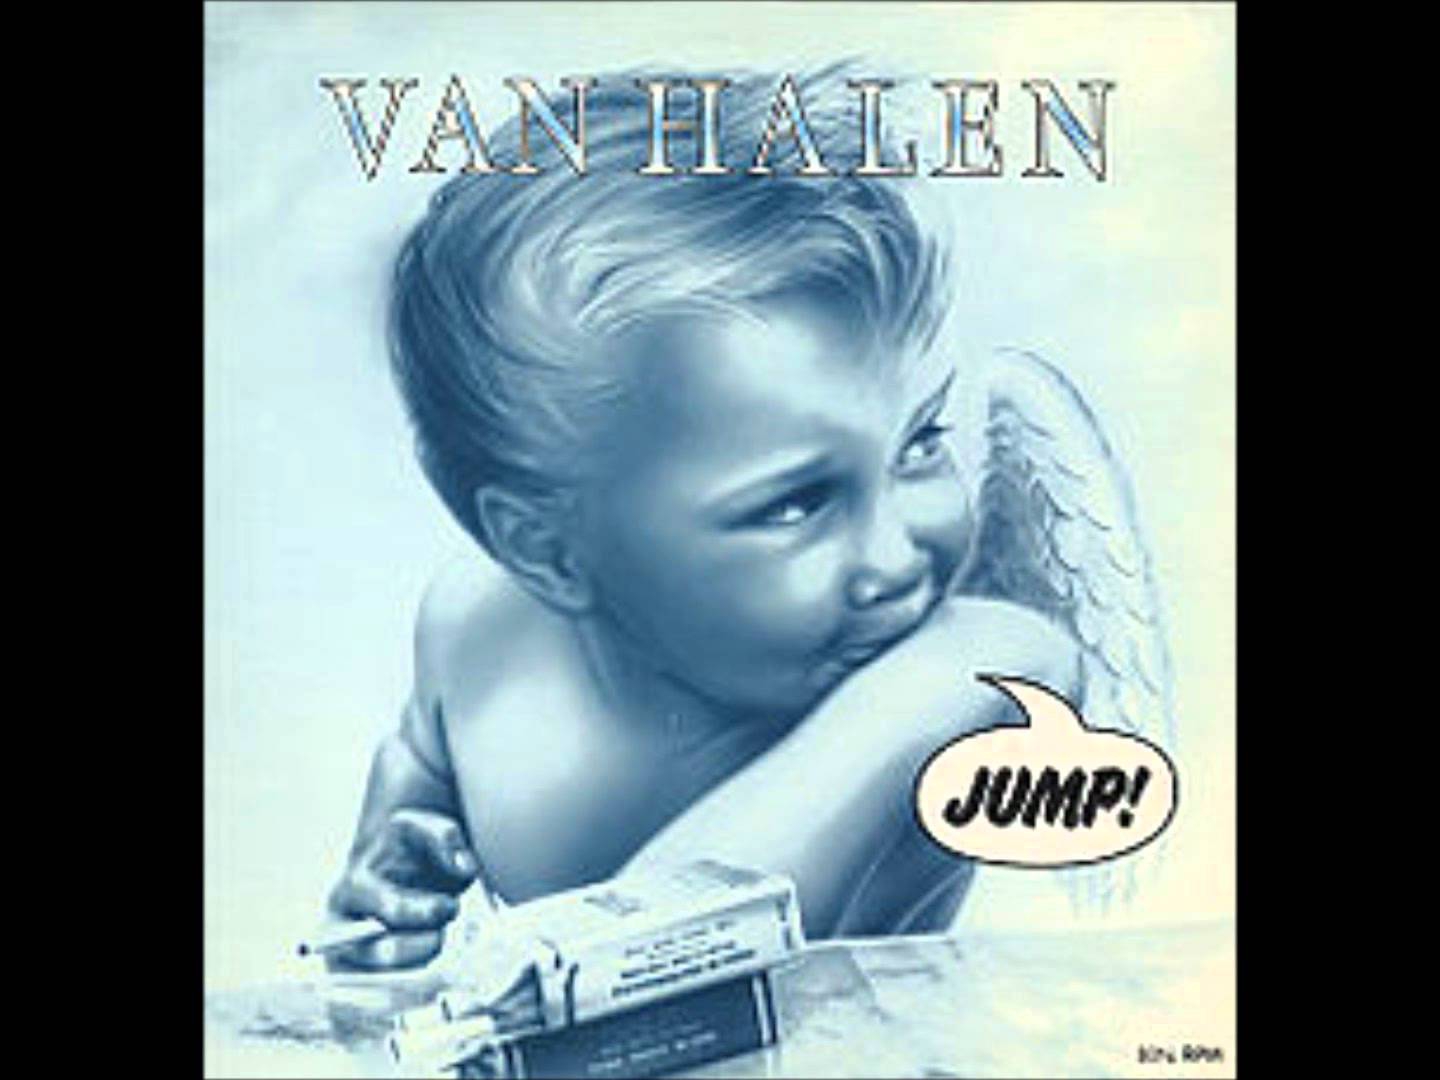 ヴァン・ヘイレン「ジャンプ！」 | Warner Music Life